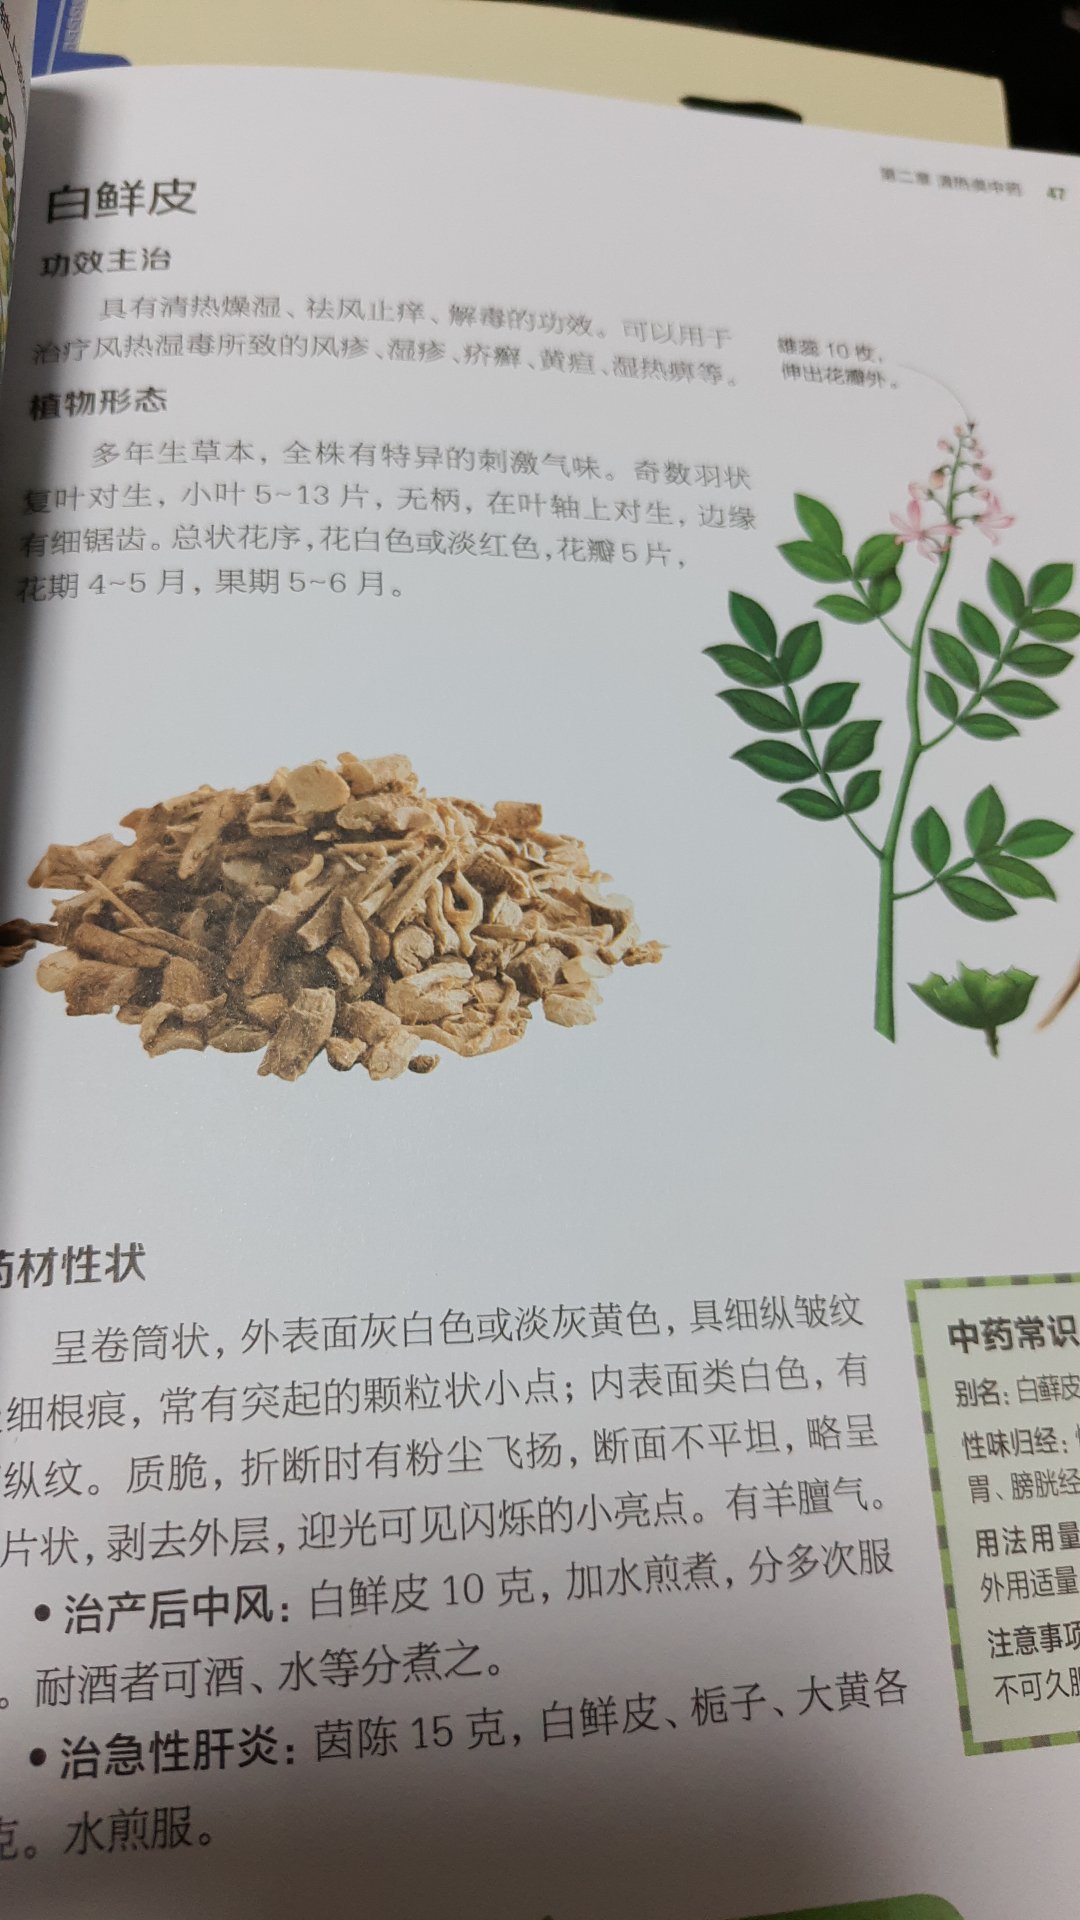 这本书印刷得不错，图文并茂。讲述了很多中药的知识和植物形态。